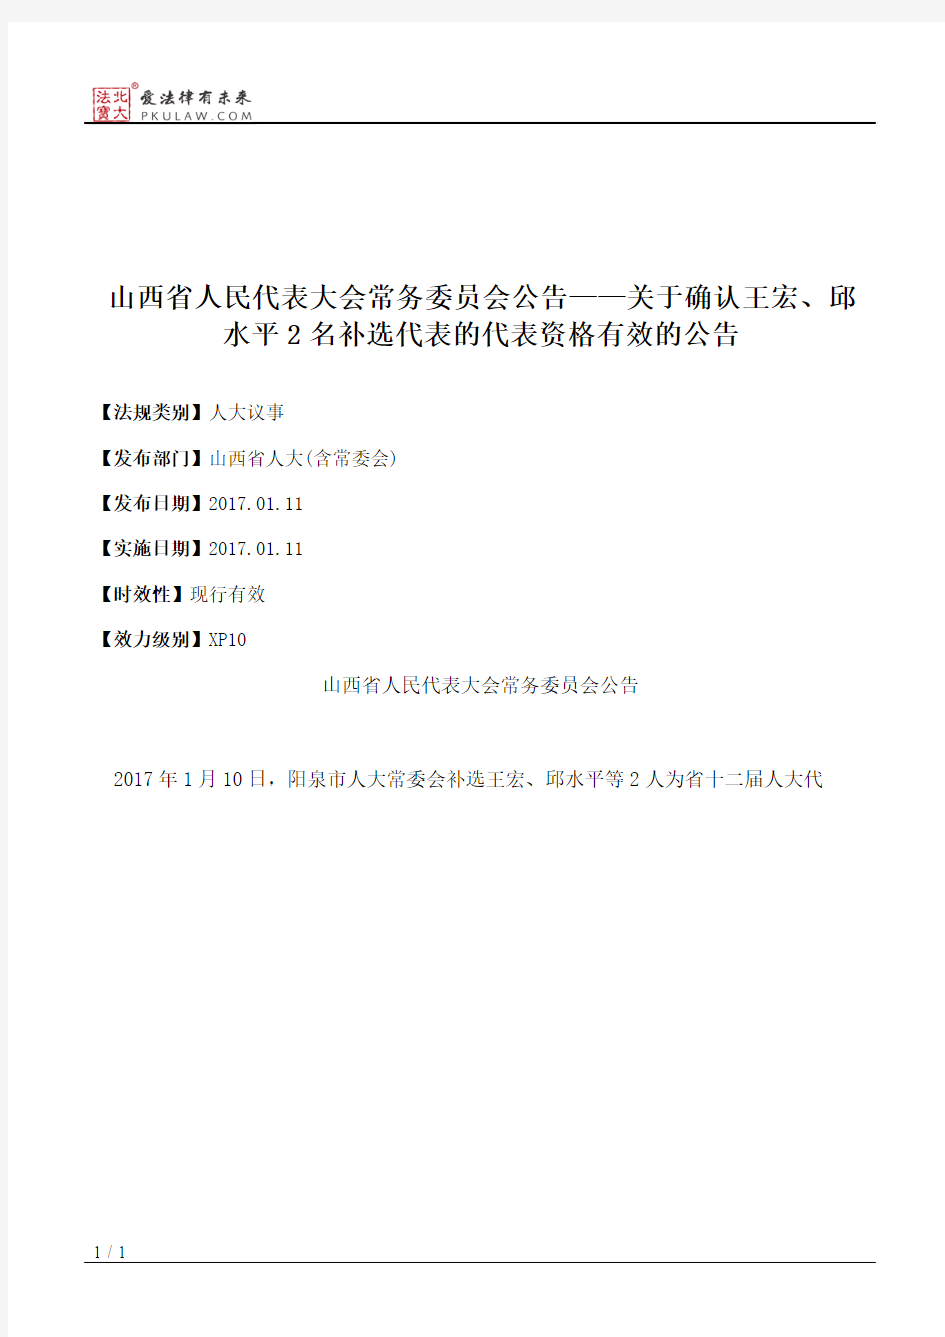 山西省人大常委会公告——关于确认王宏、邱水平2名补选代表的代